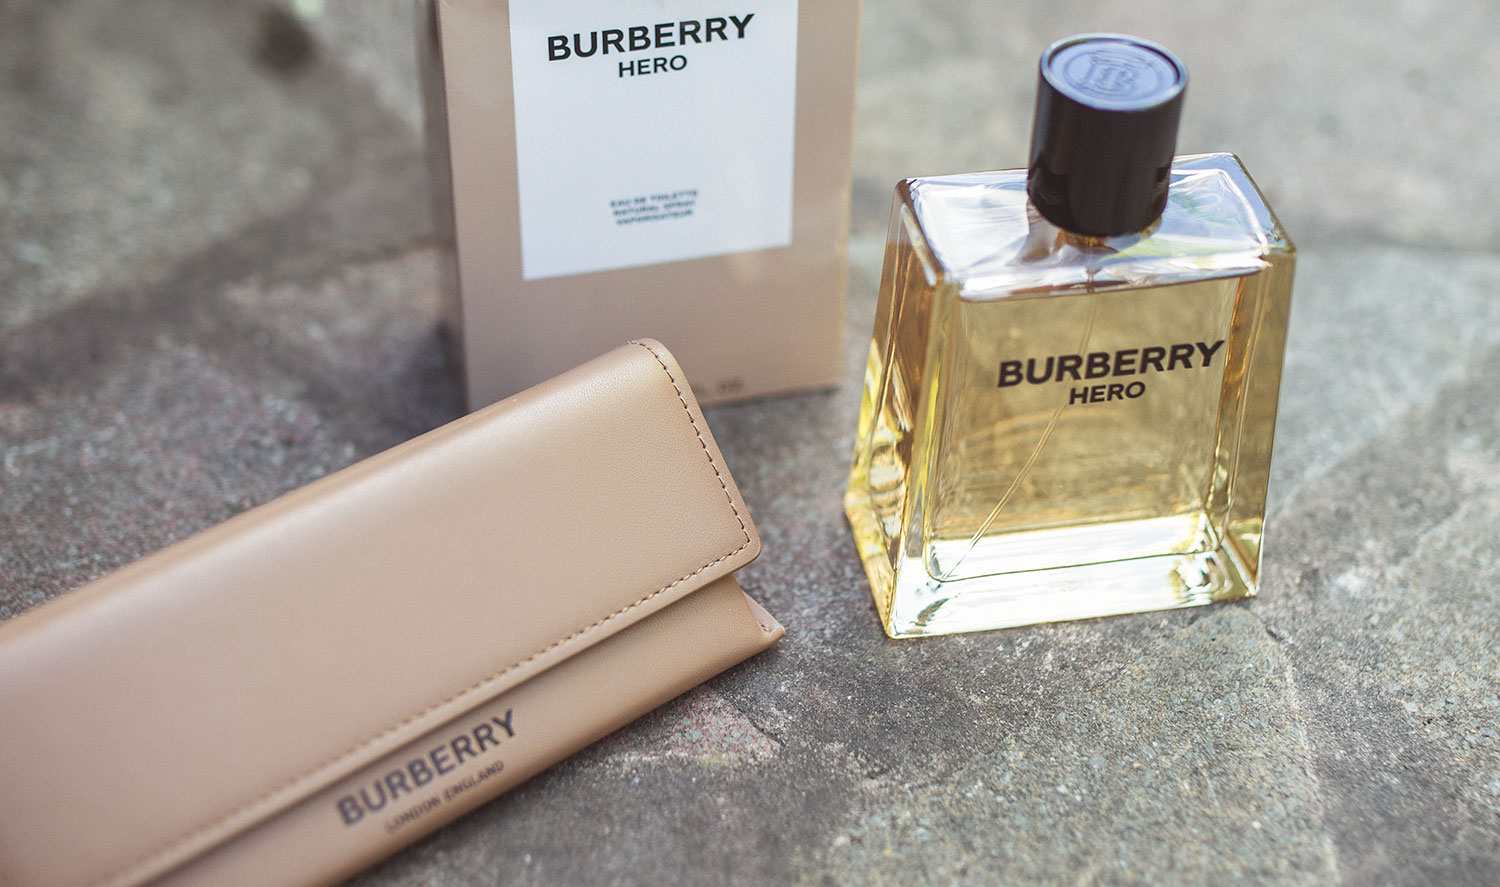 Hero Eau de Parfum Burberry cologne - a new fragrance for men 2022